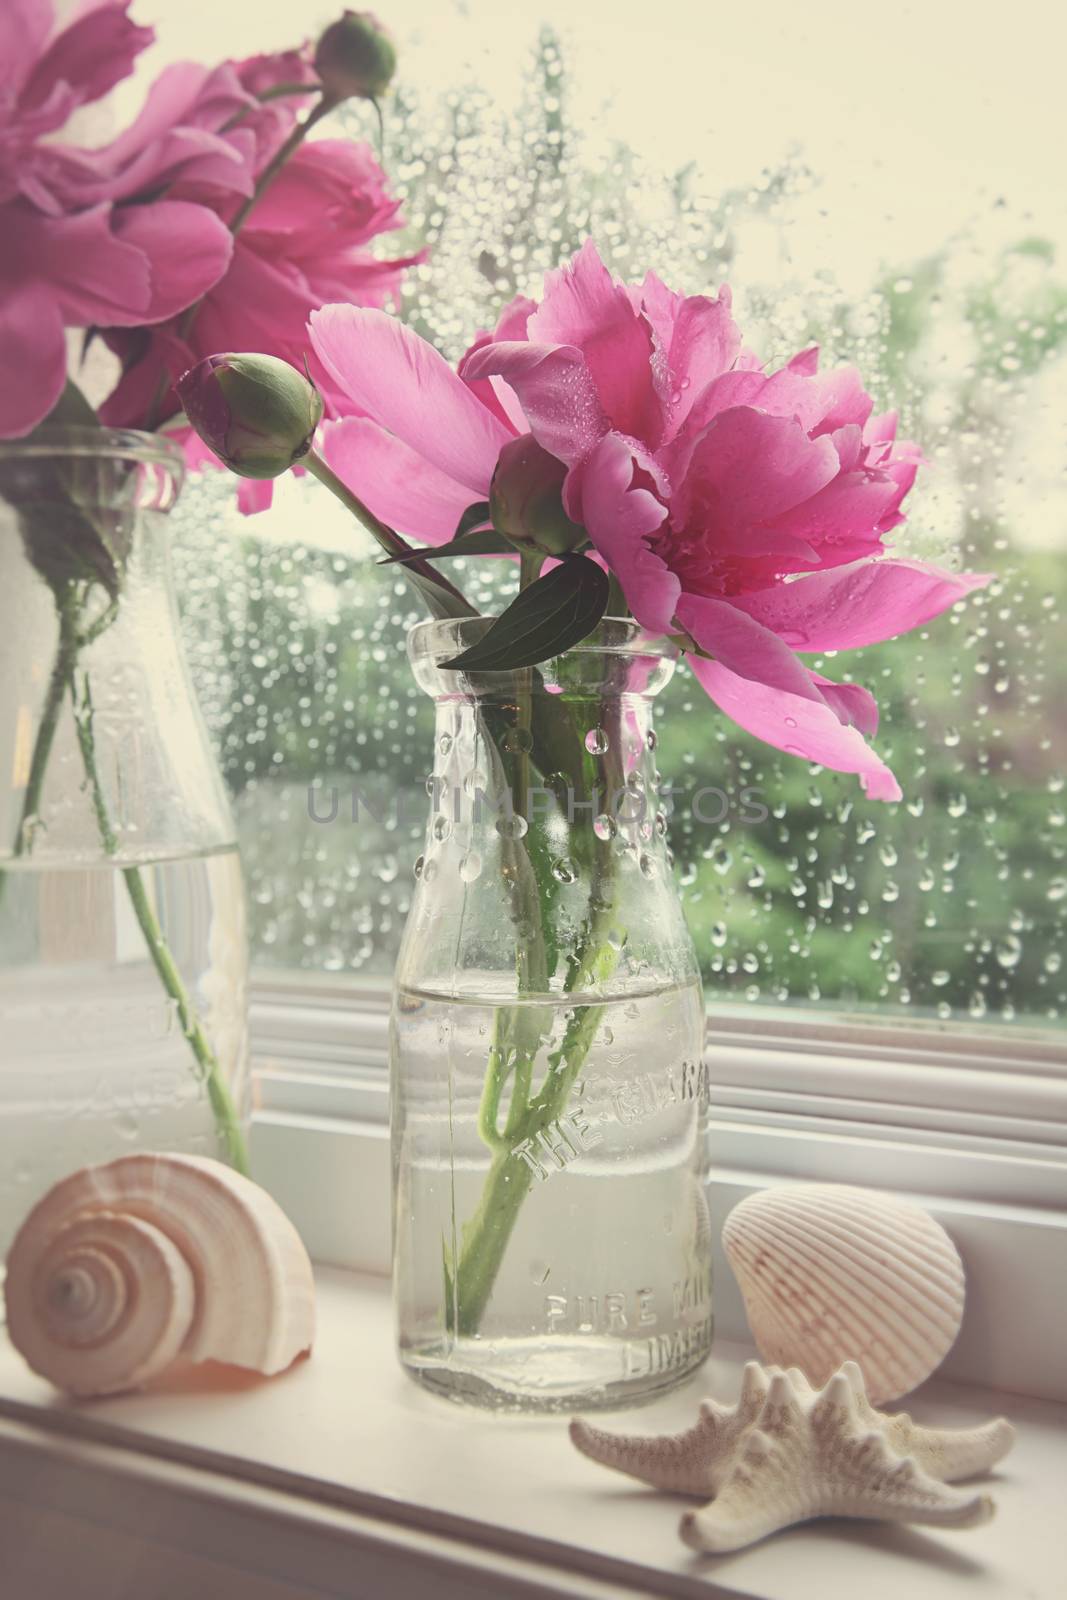 Peony flowers in milk bottles on the window sill